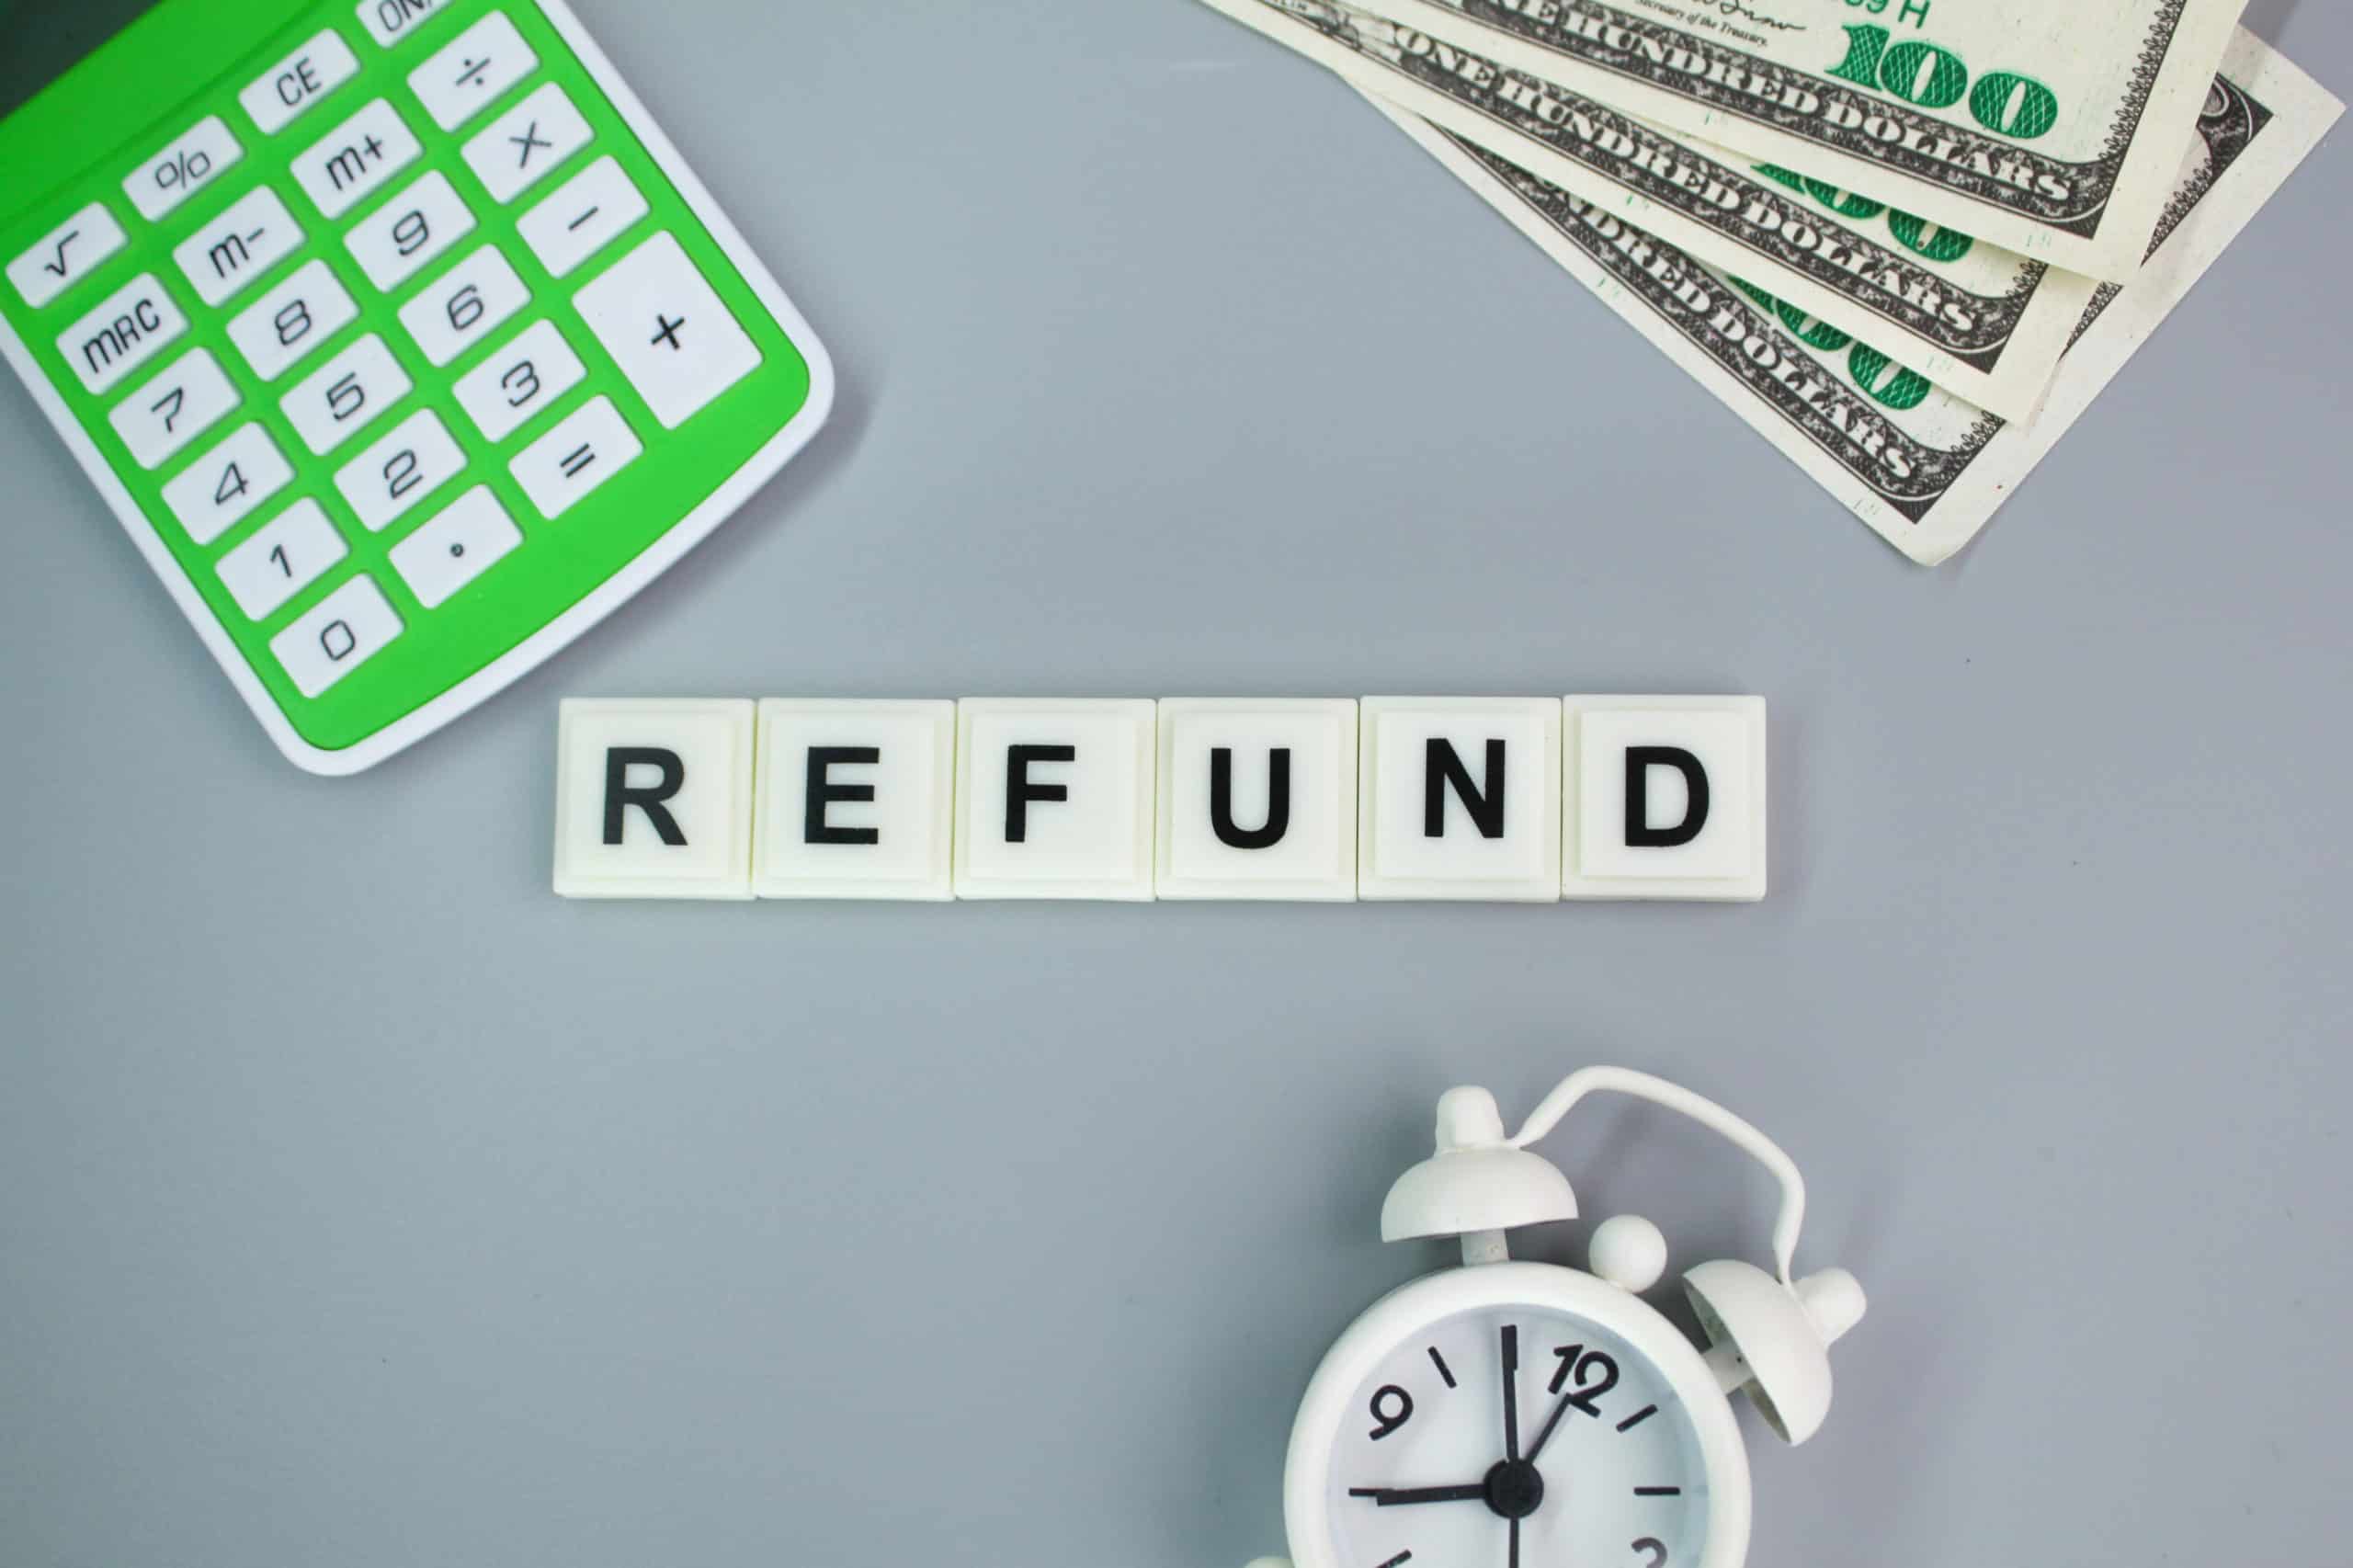 excise tax refund